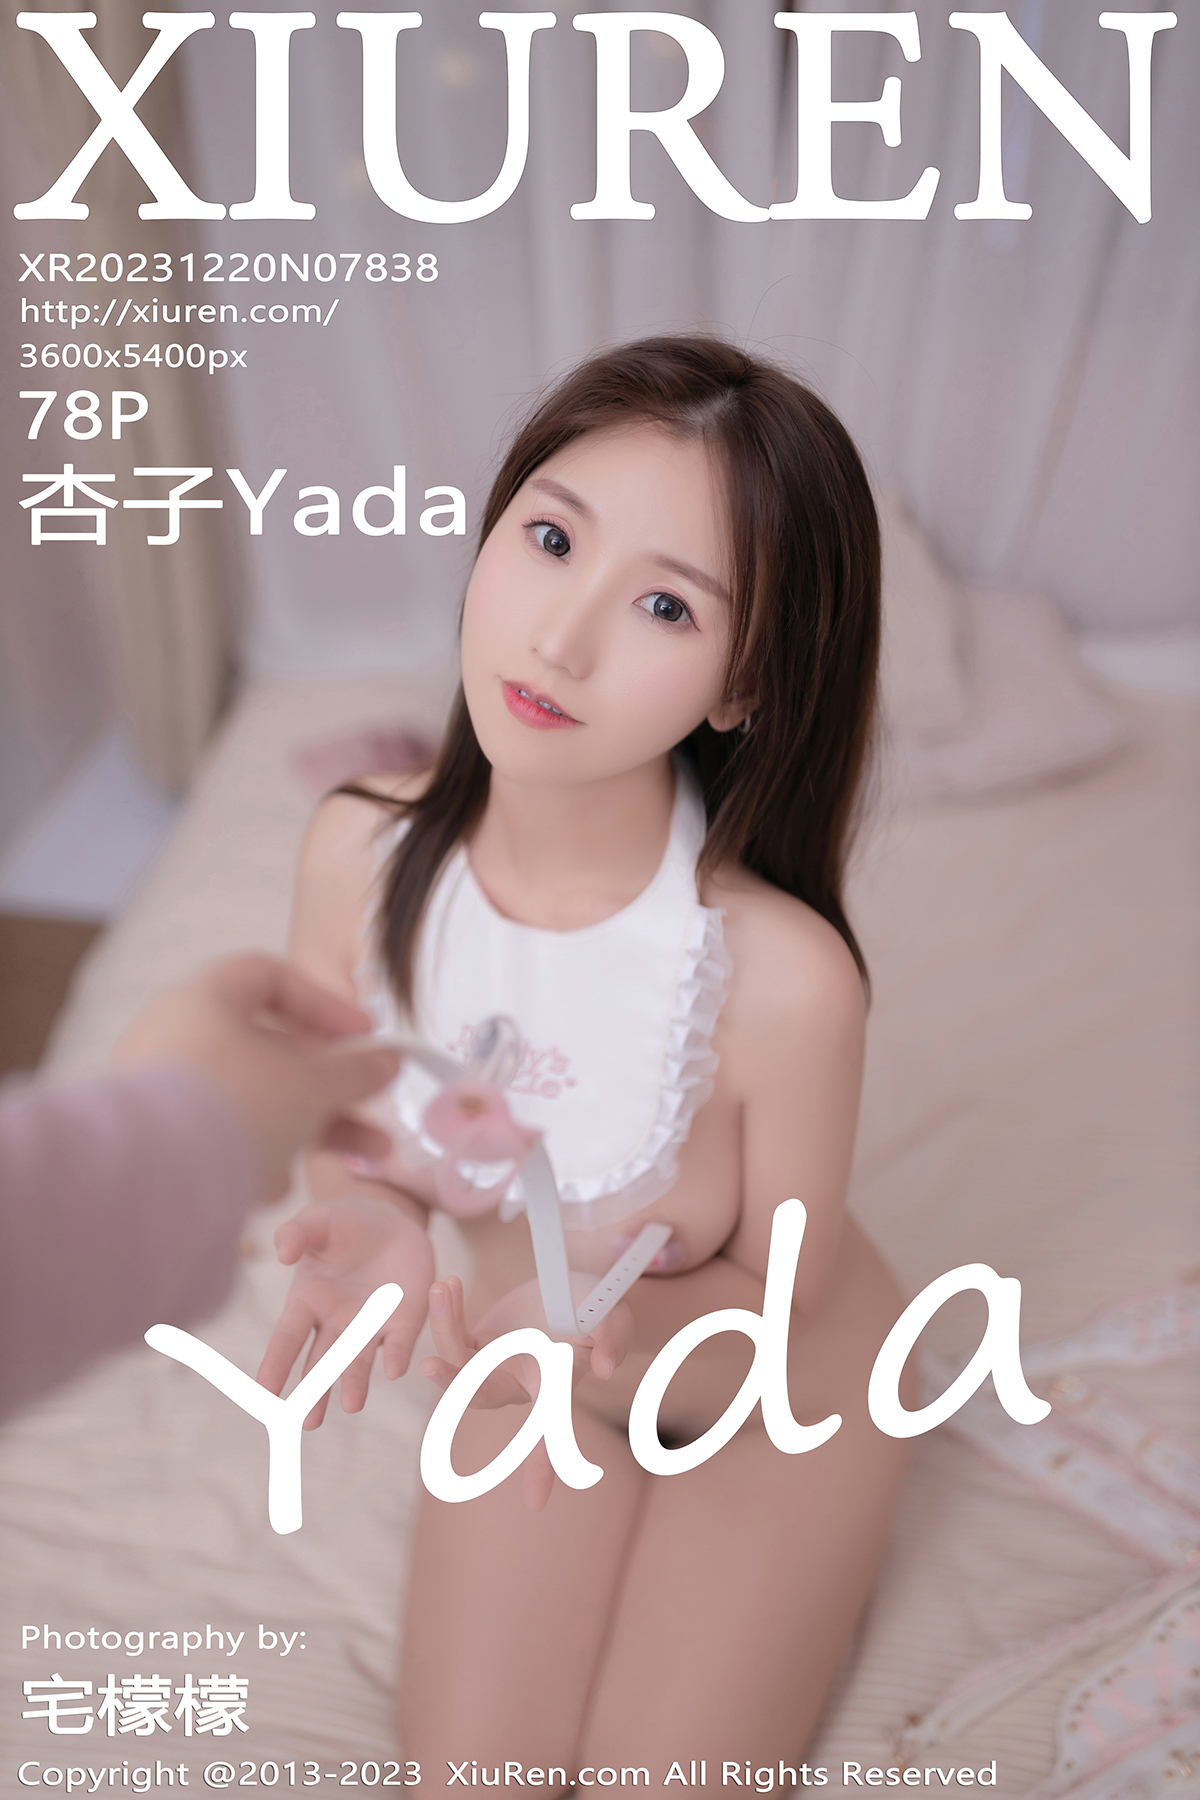 秀人 [XIUREN] 2023.12.20 杏子Yada